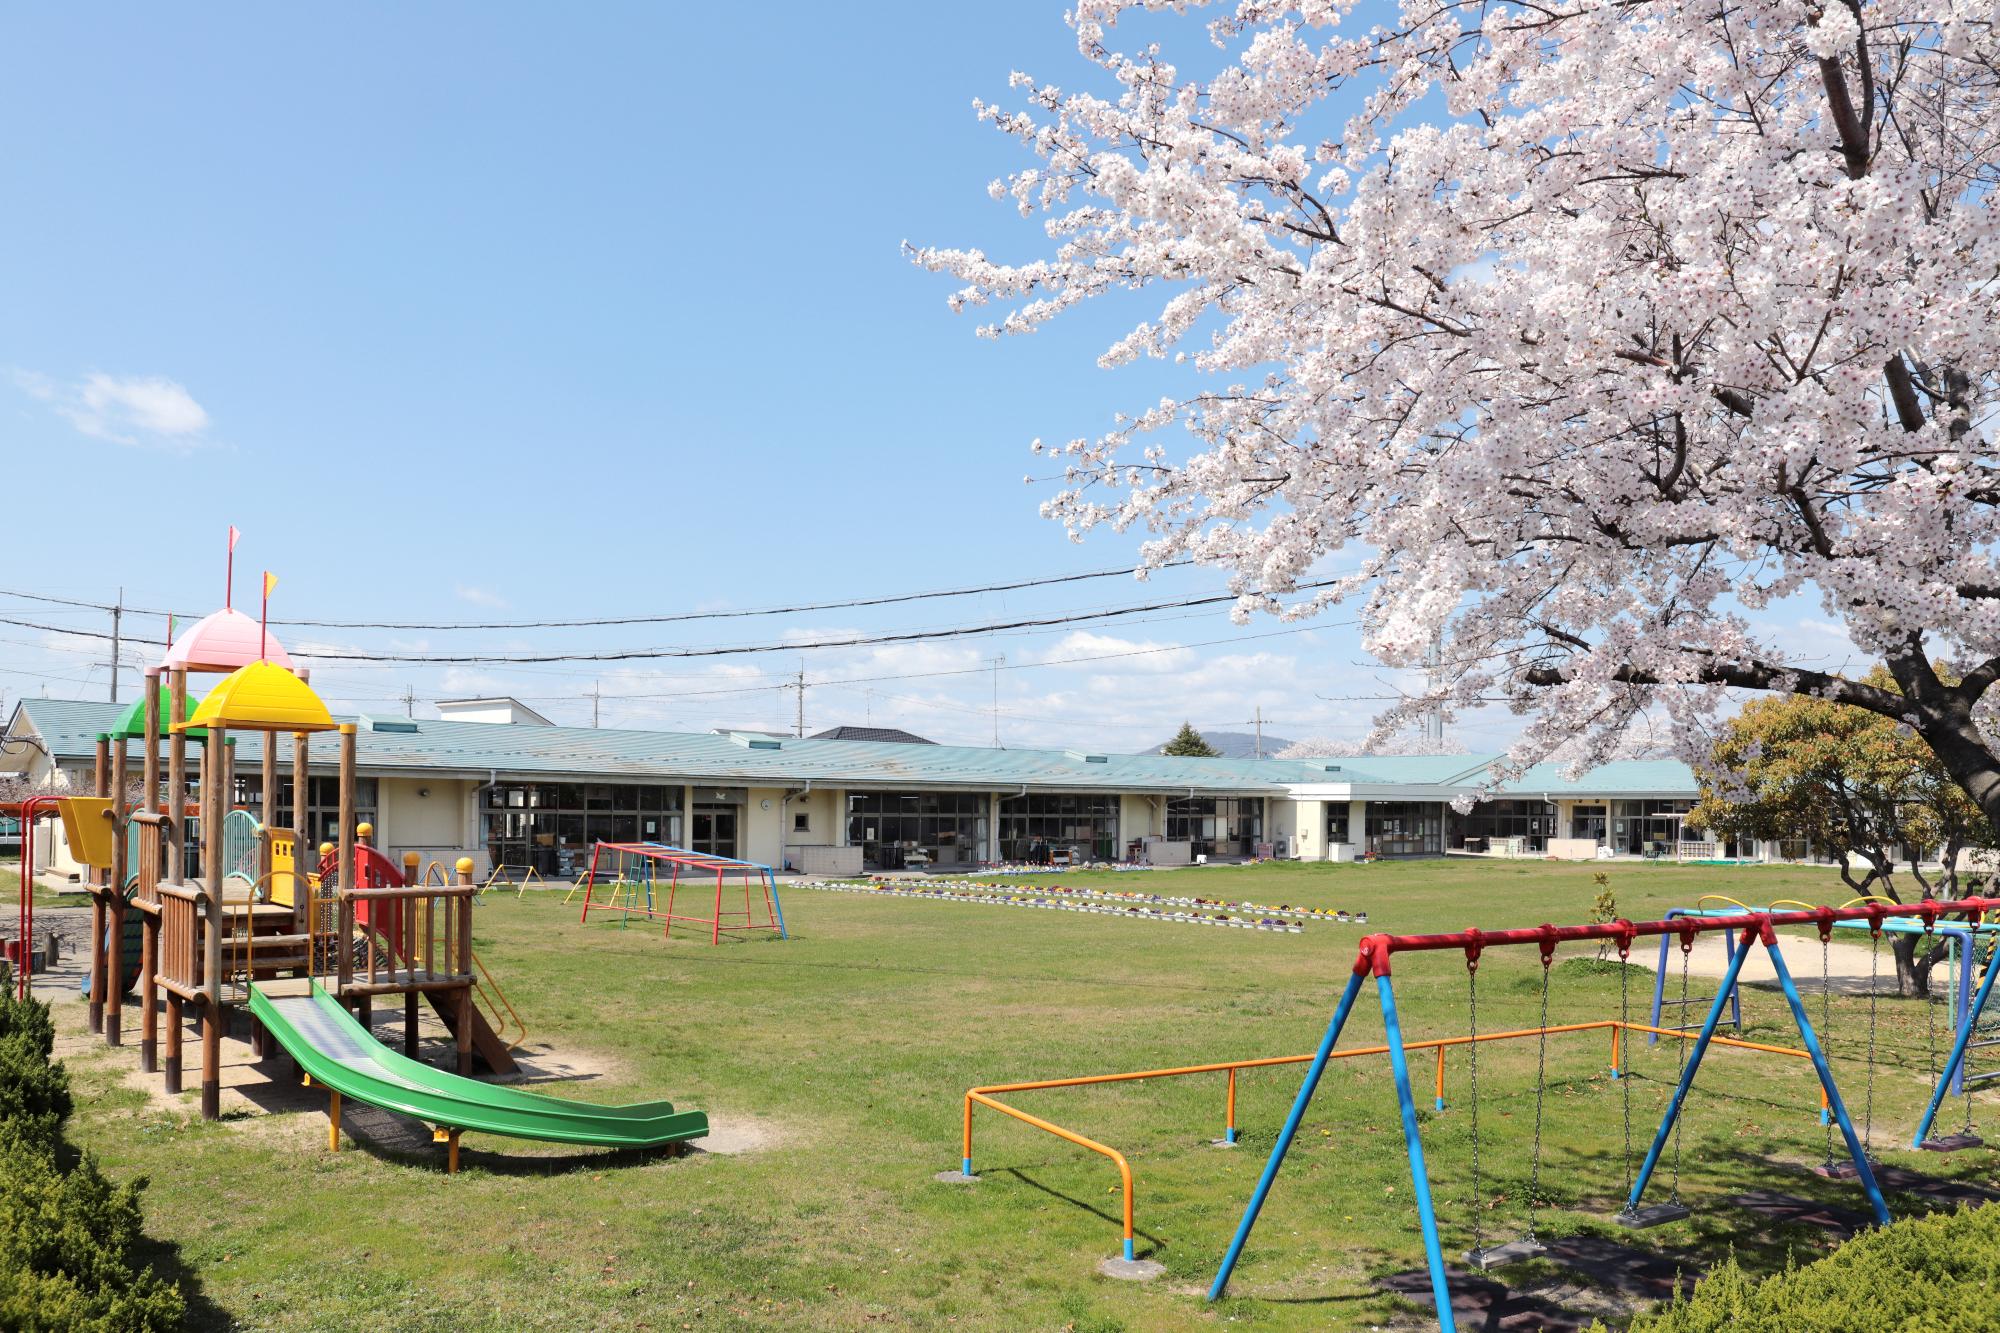 園庭から撮影された安土幼稚園の外観の写真